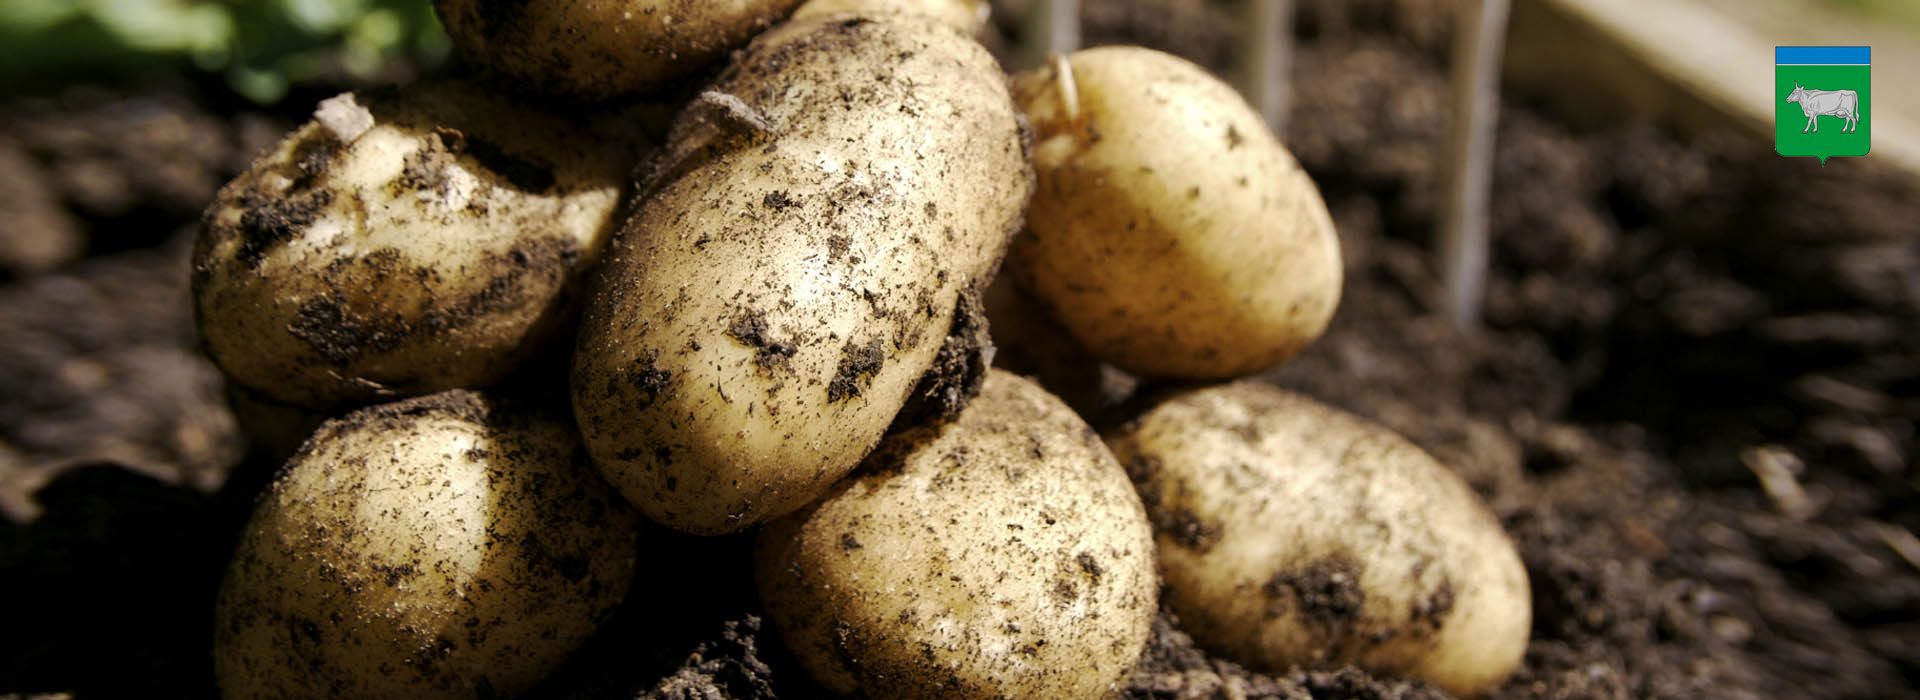 Развитие сельскохозяйственного предприятия (картофель)